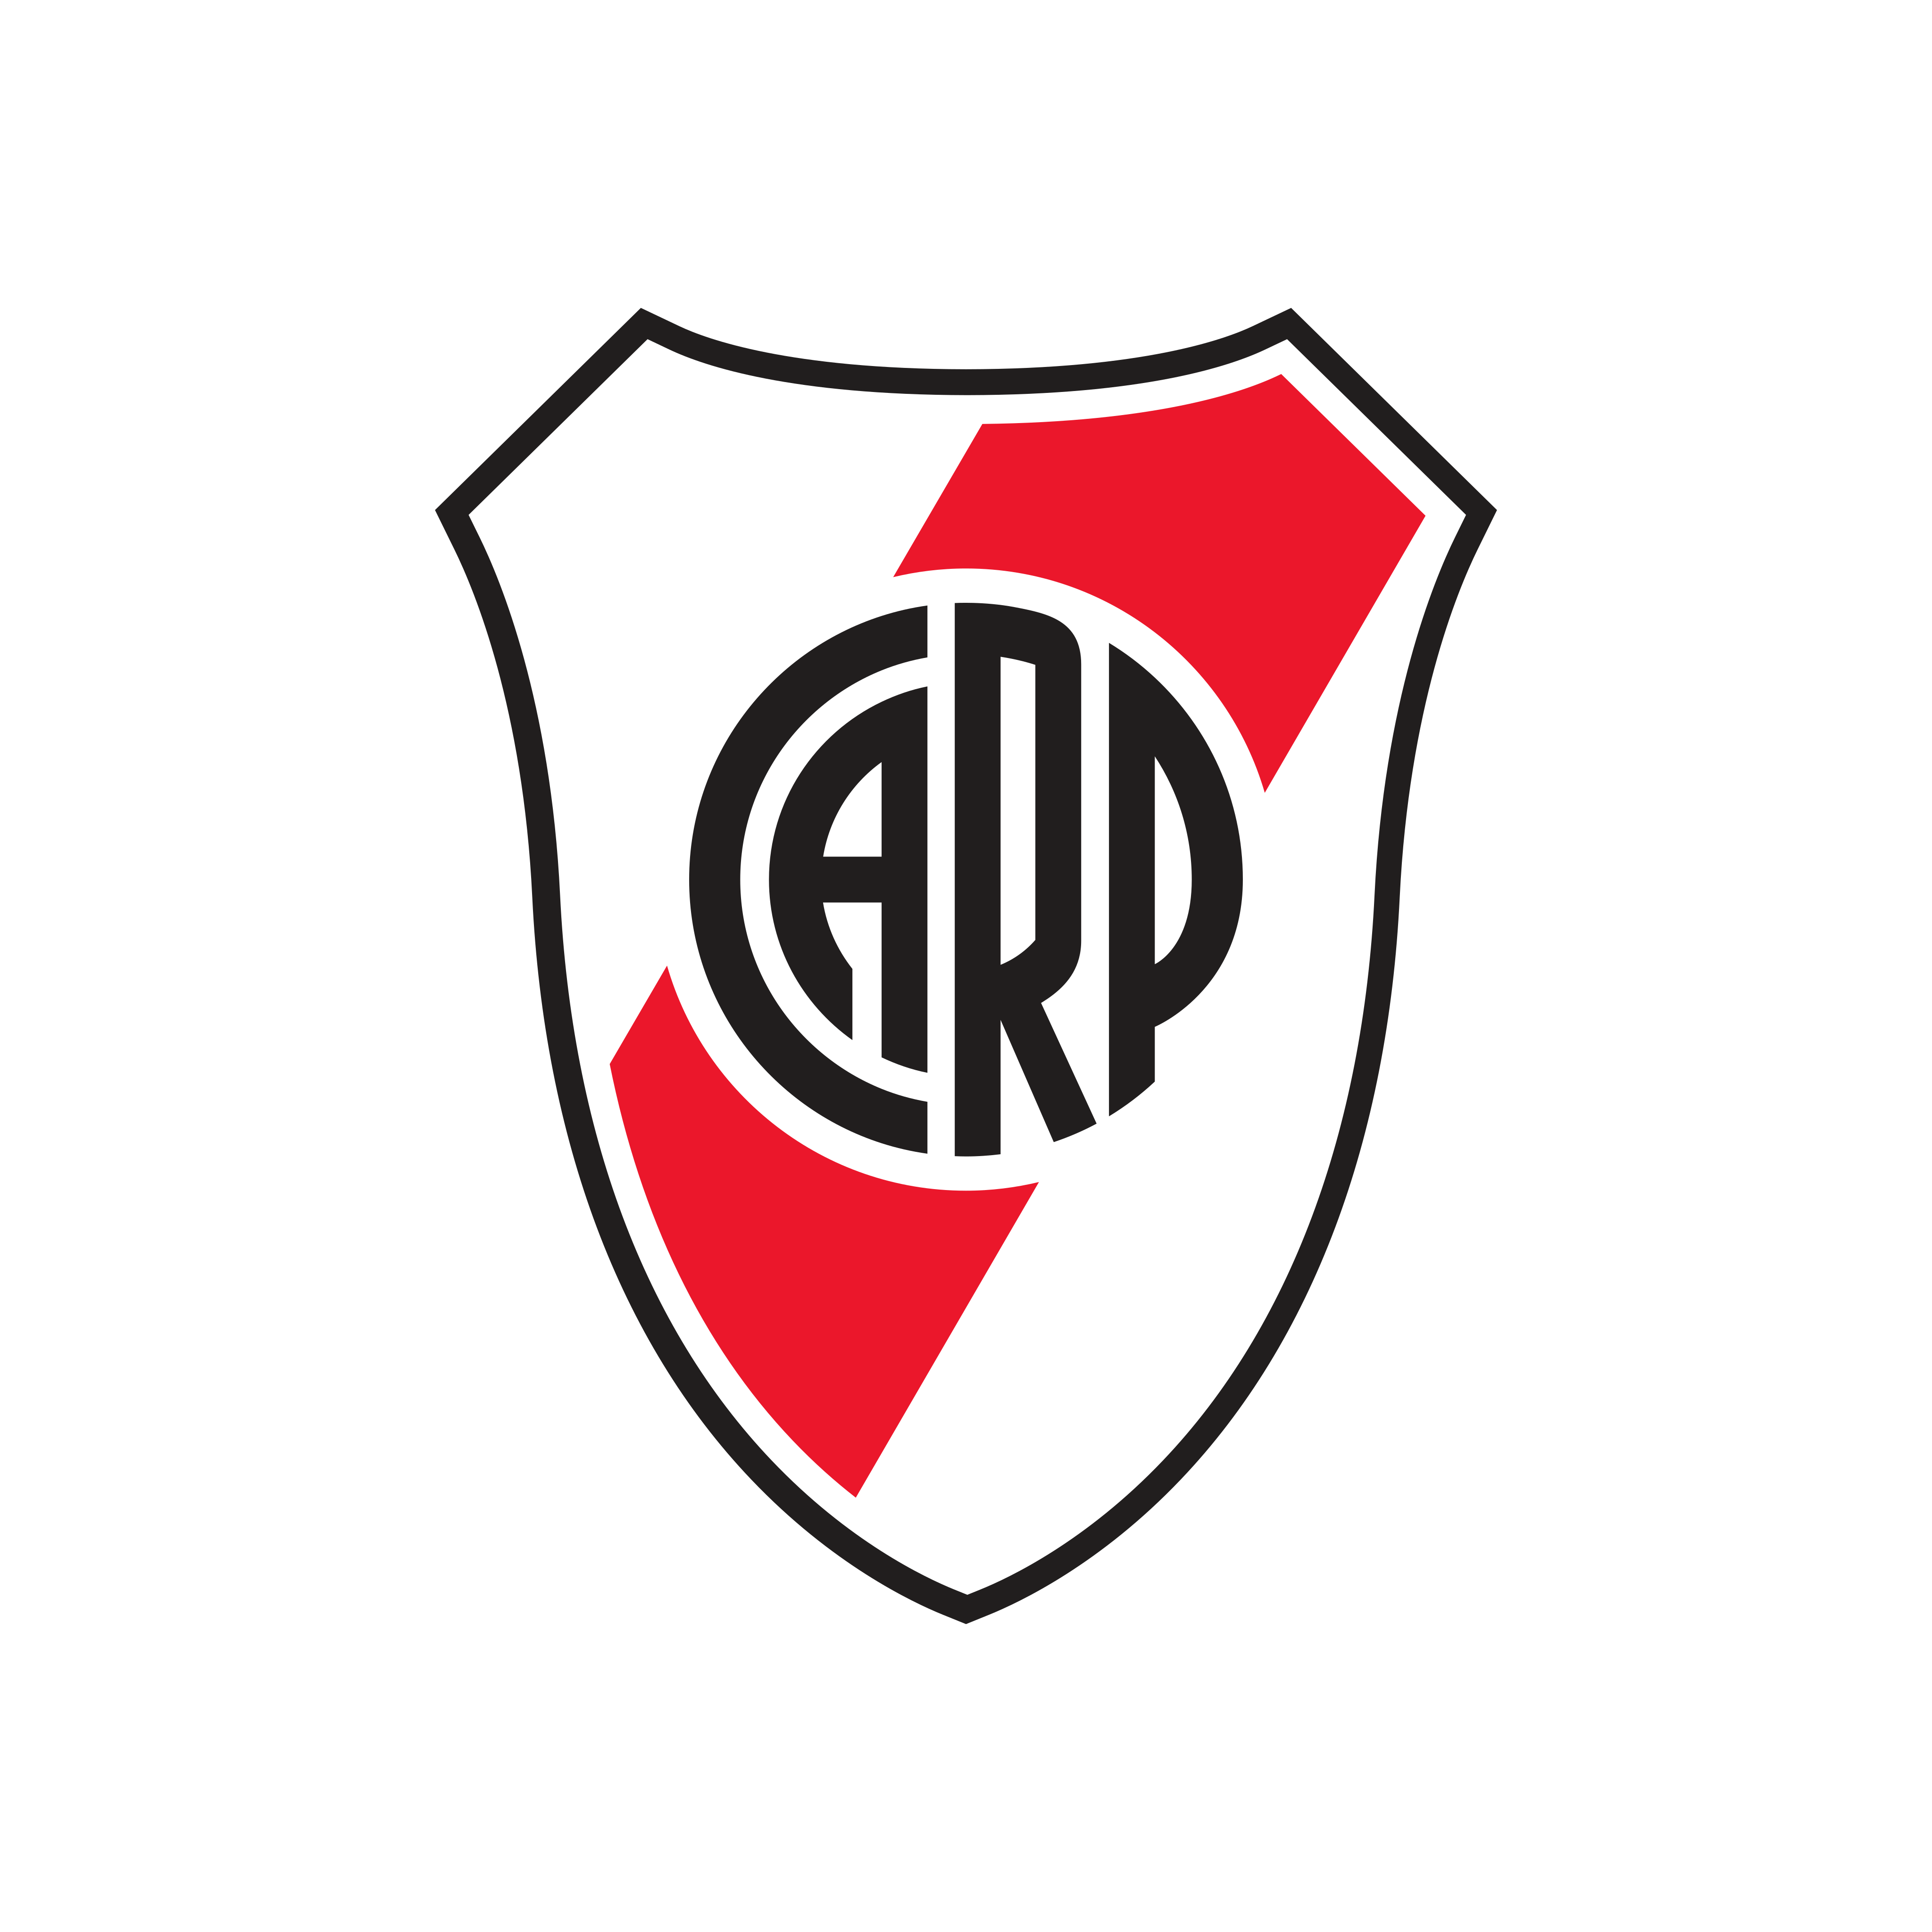 river plate logo 0 1 - River Plate Logo - Club Atlético River Plate Escudo